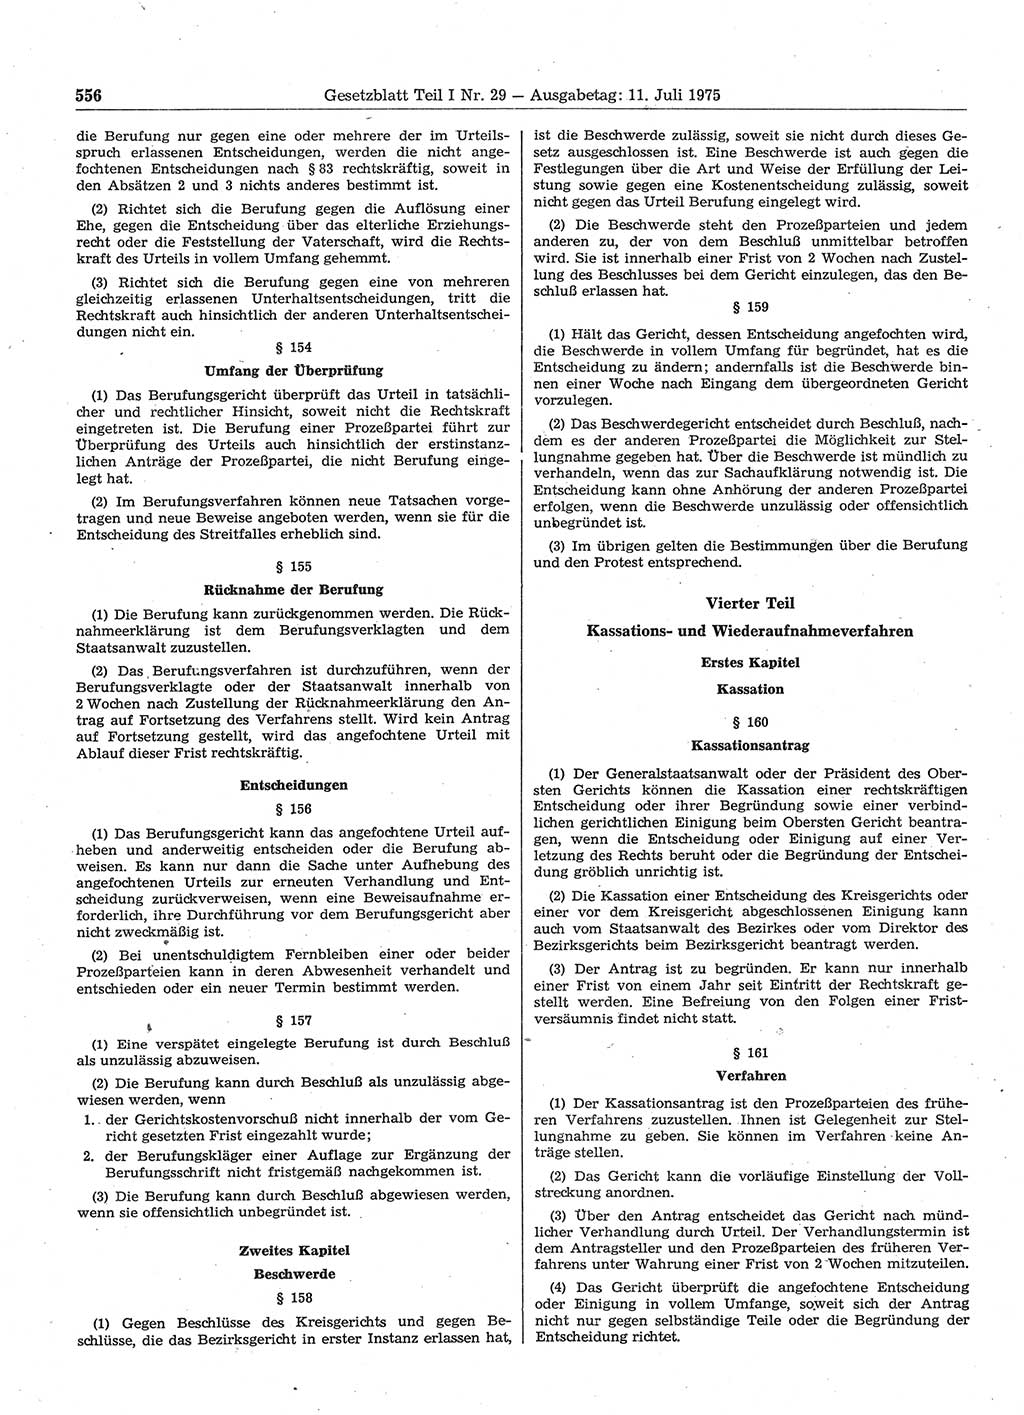 Gesetzblatt (GBl.) der Deutschen Demokratischen Republik (DDR) Teil Ⅰ 1975, Seite 556 (GBl. DDR Ⅰ 1975, S. 556)